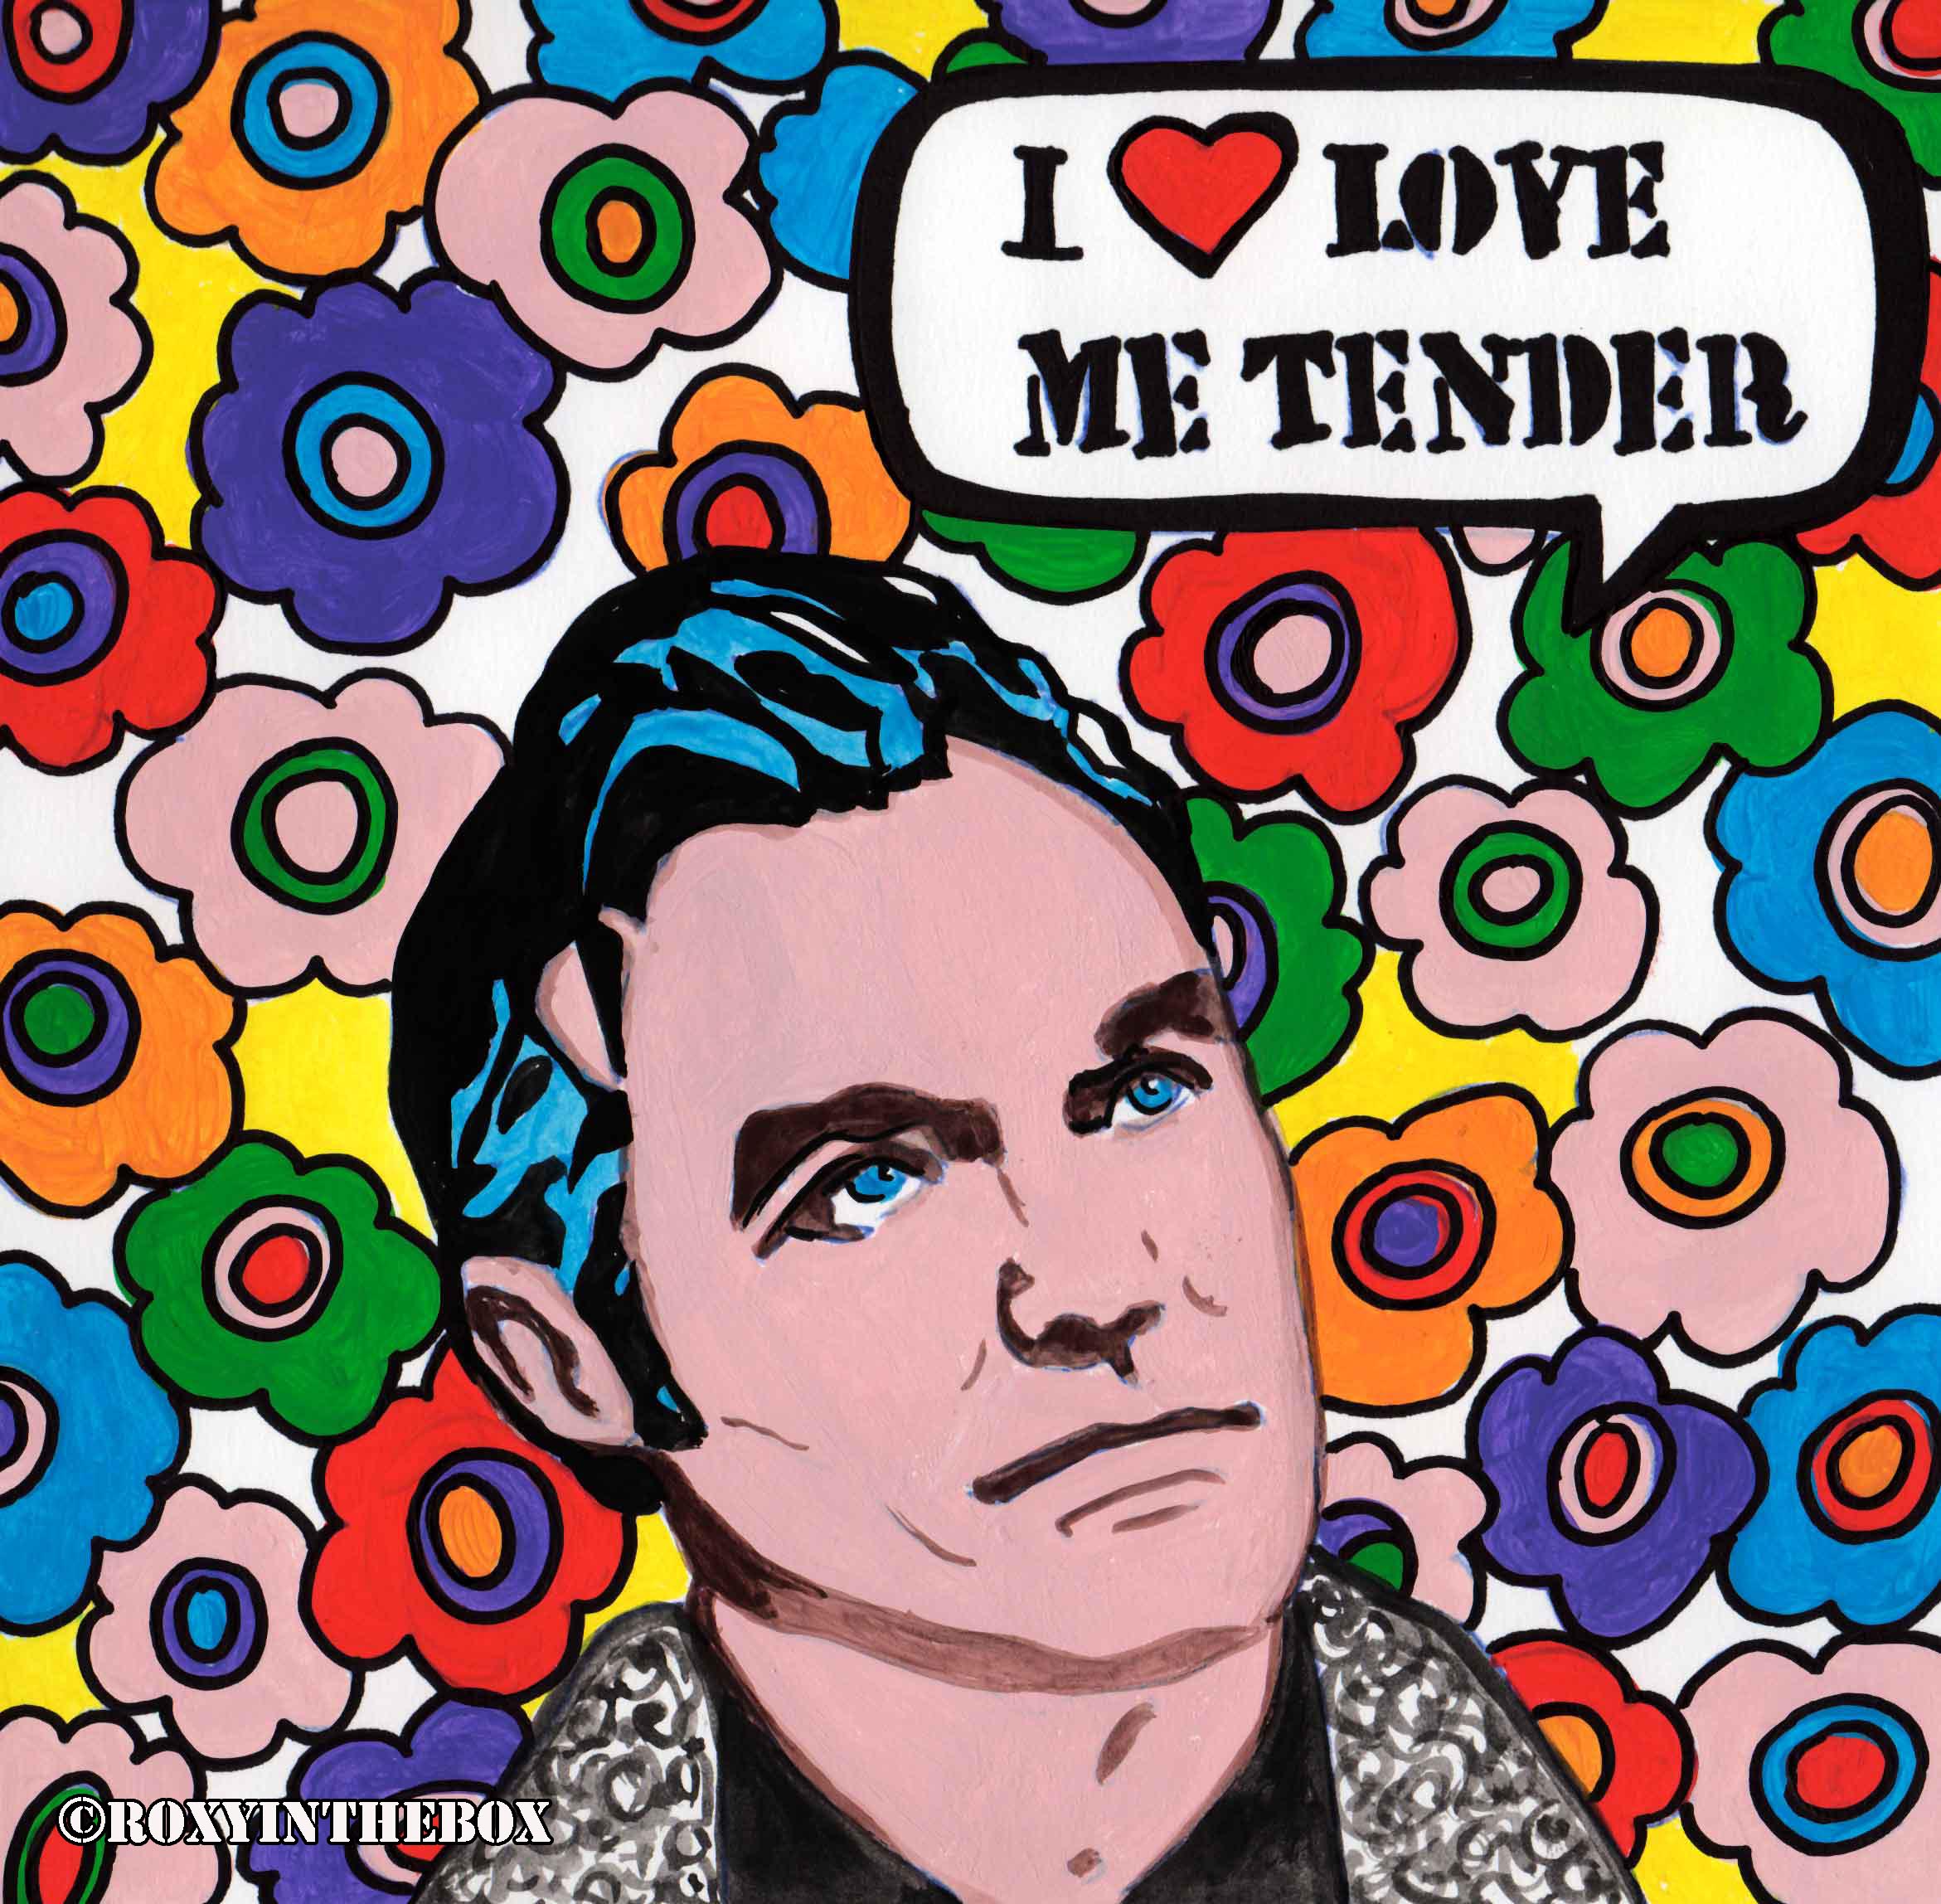 I Love Me tender